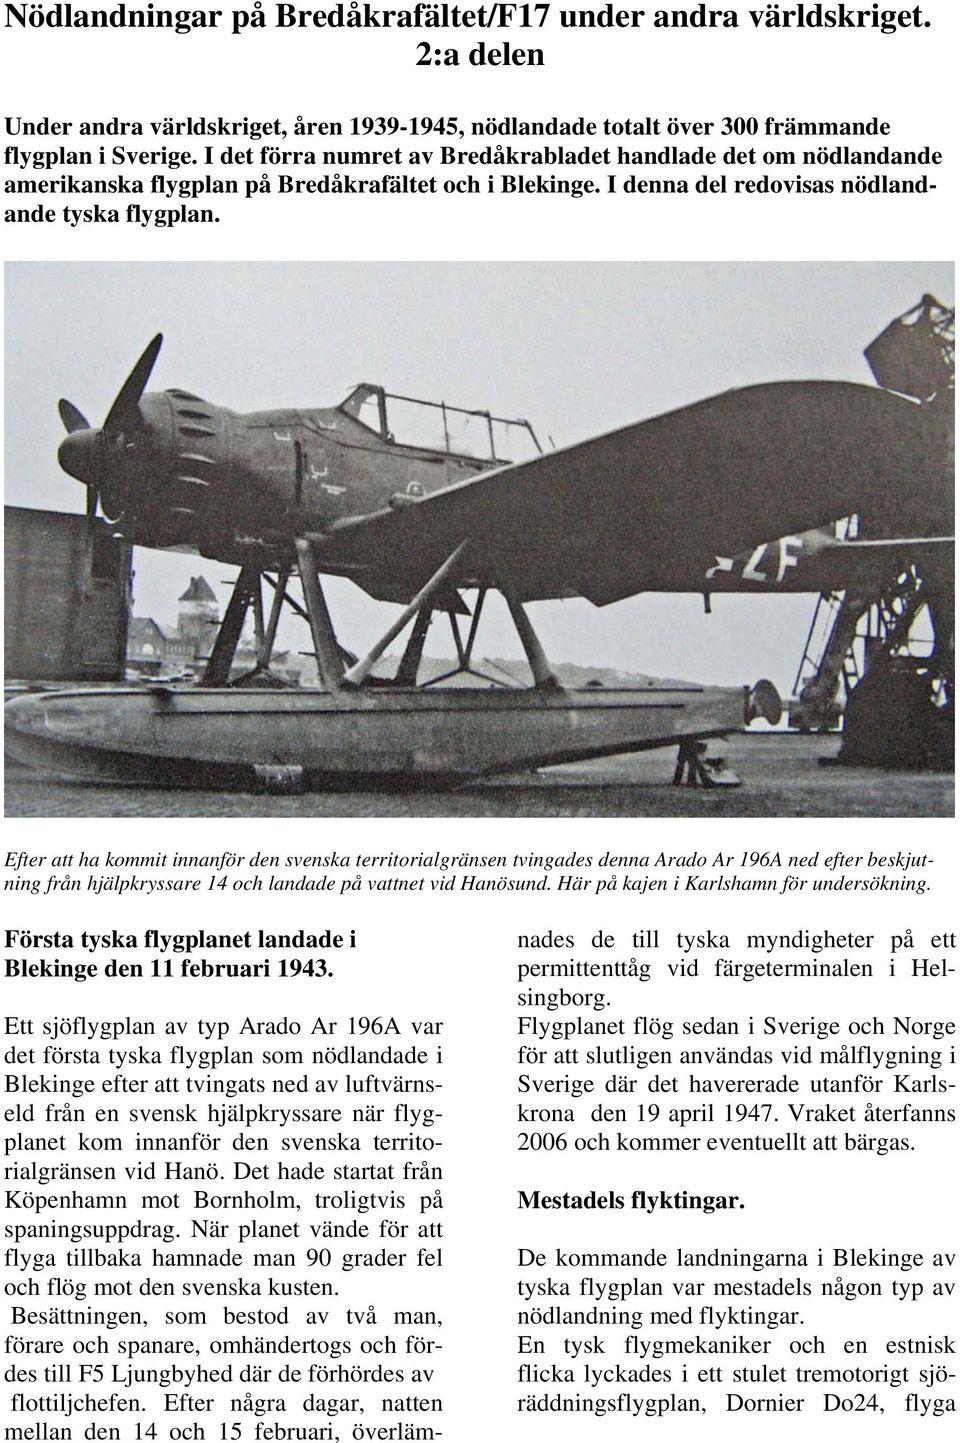 Efter att ha kommit innanför den svenska territorialgränsen tvingades denna Arado Ar 196A ned efter beskjutning från hjälpkryssare 14 och landade på vattnet vid Hanösund.